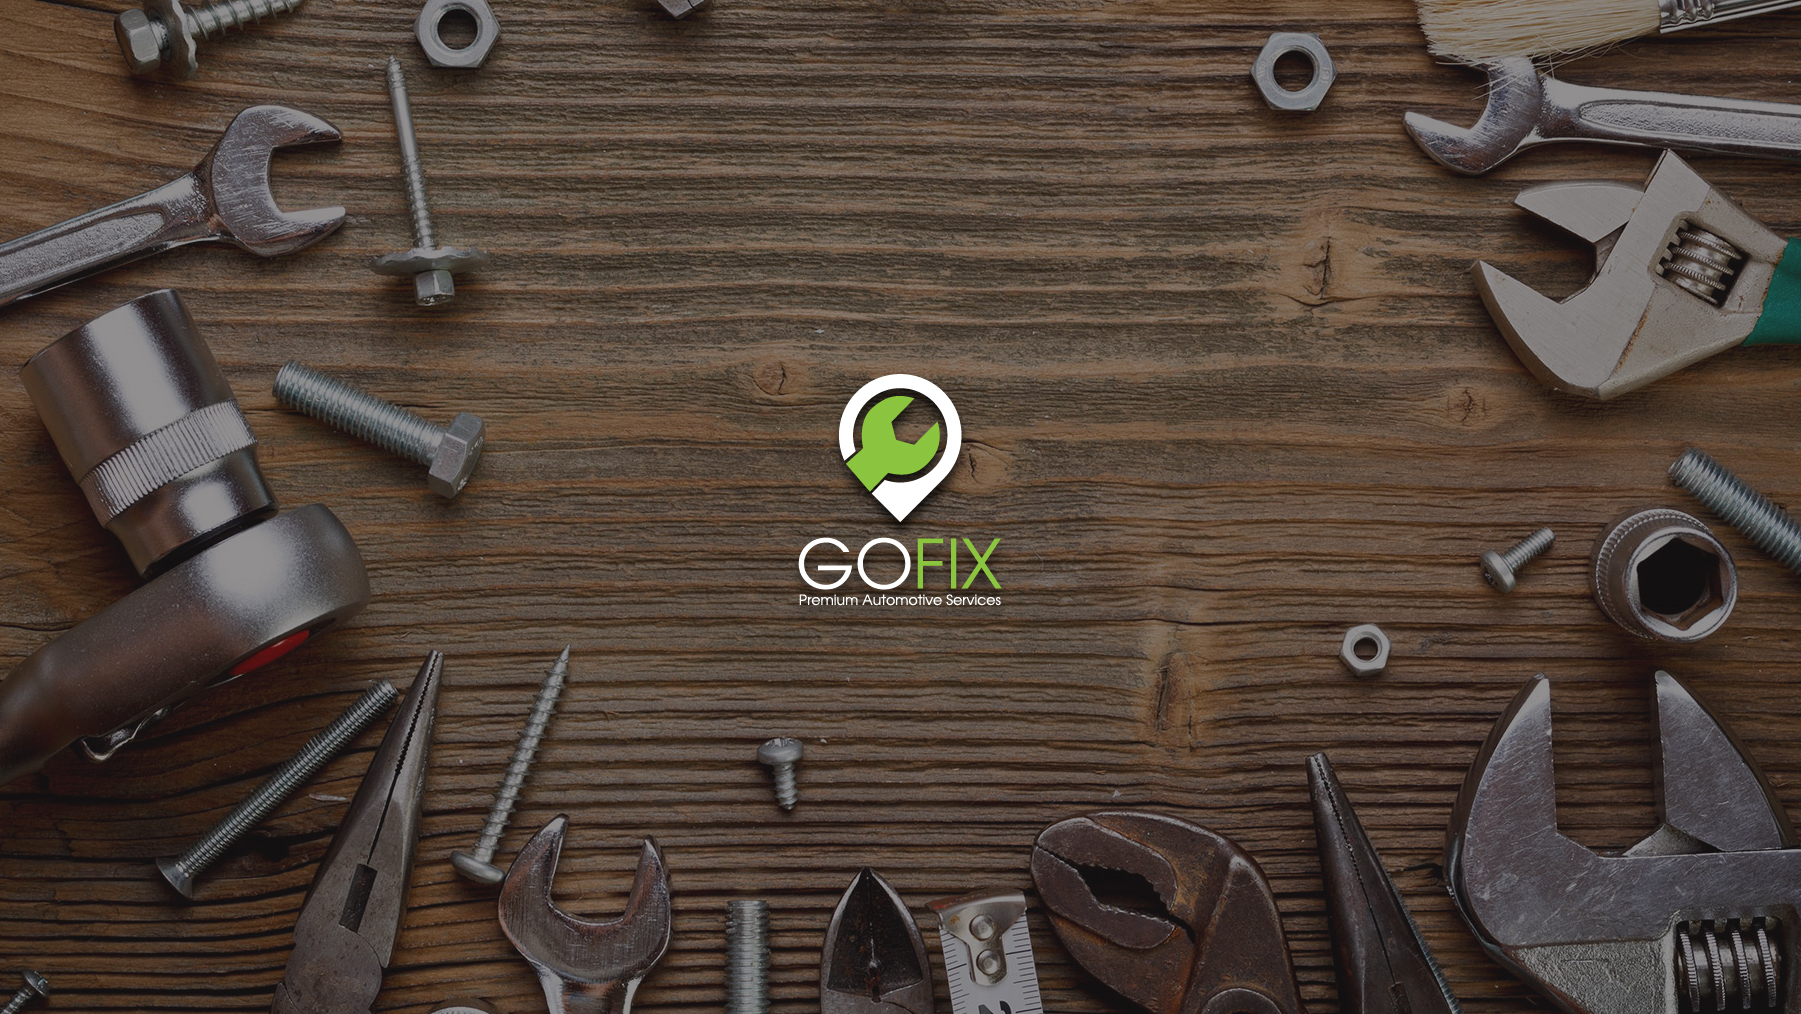 GoFix - Prepaid Premium Automotive Services